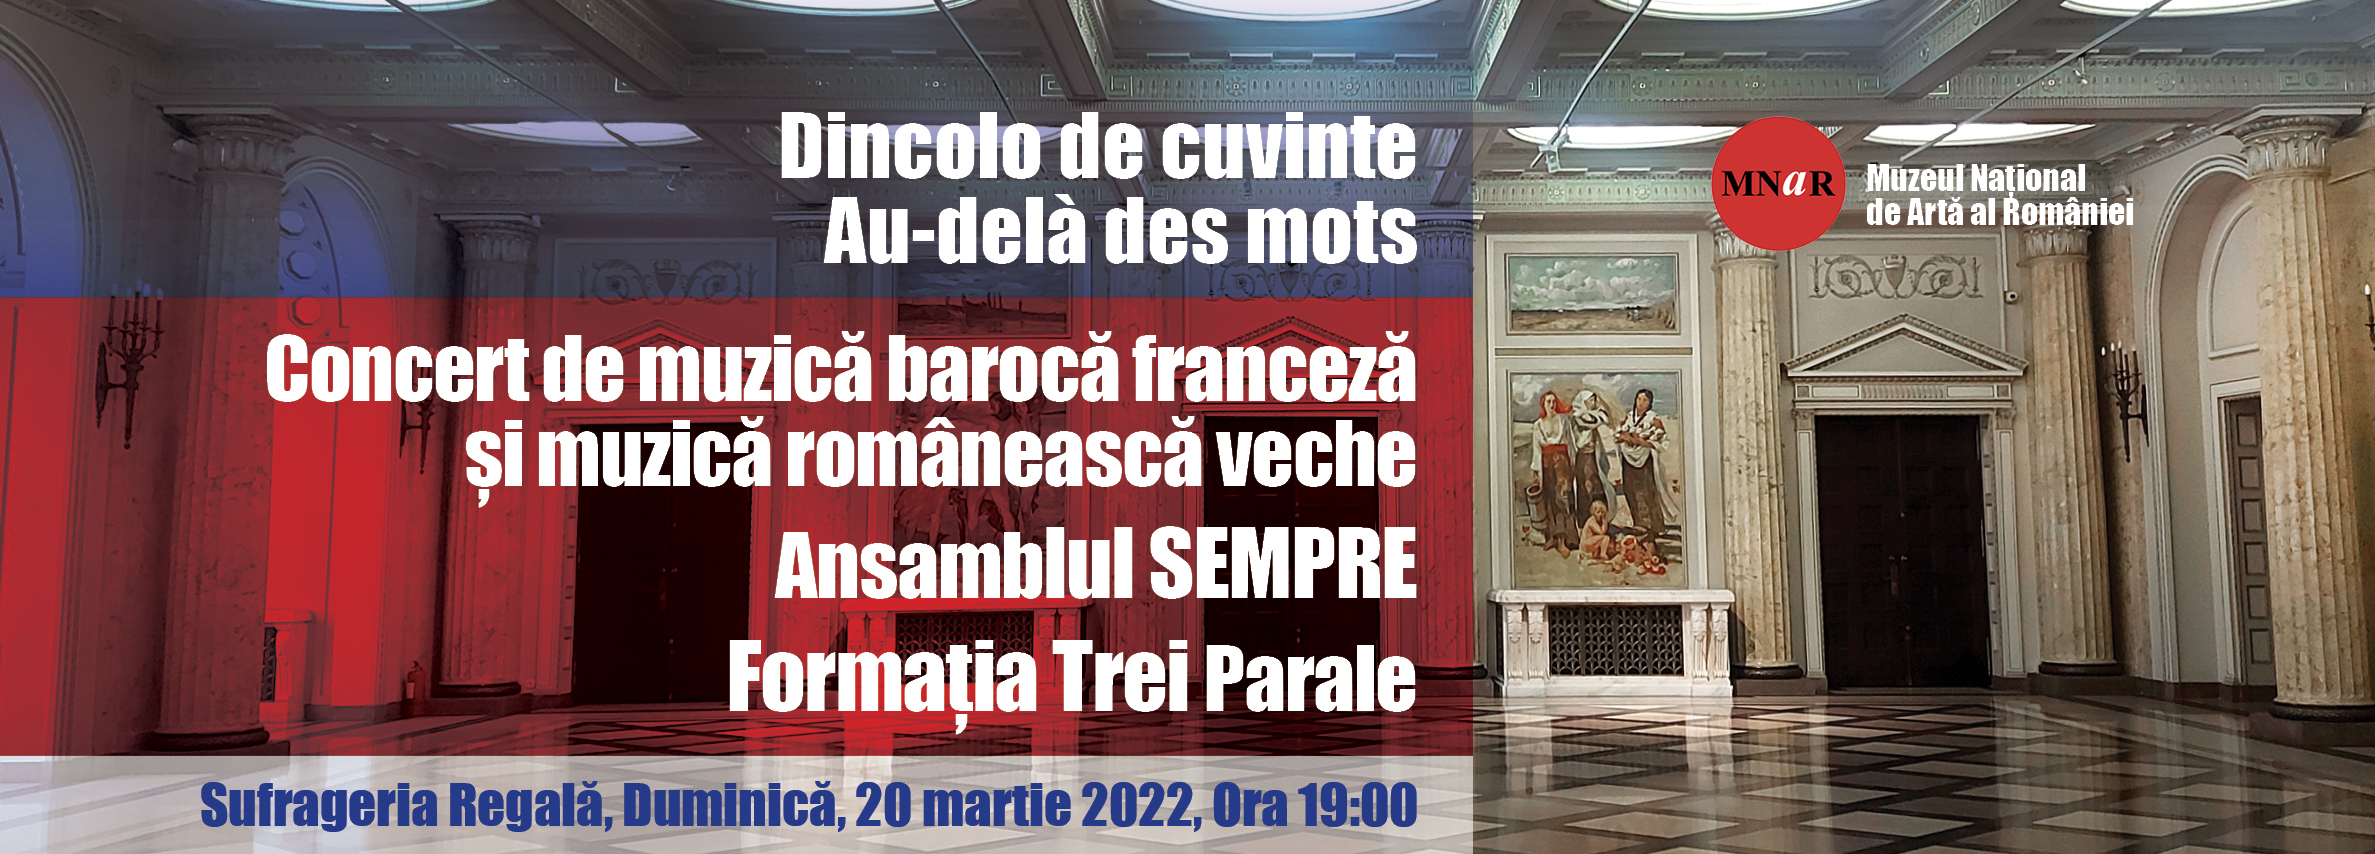 Concert de muzică barocă franceză și muzică veche românească